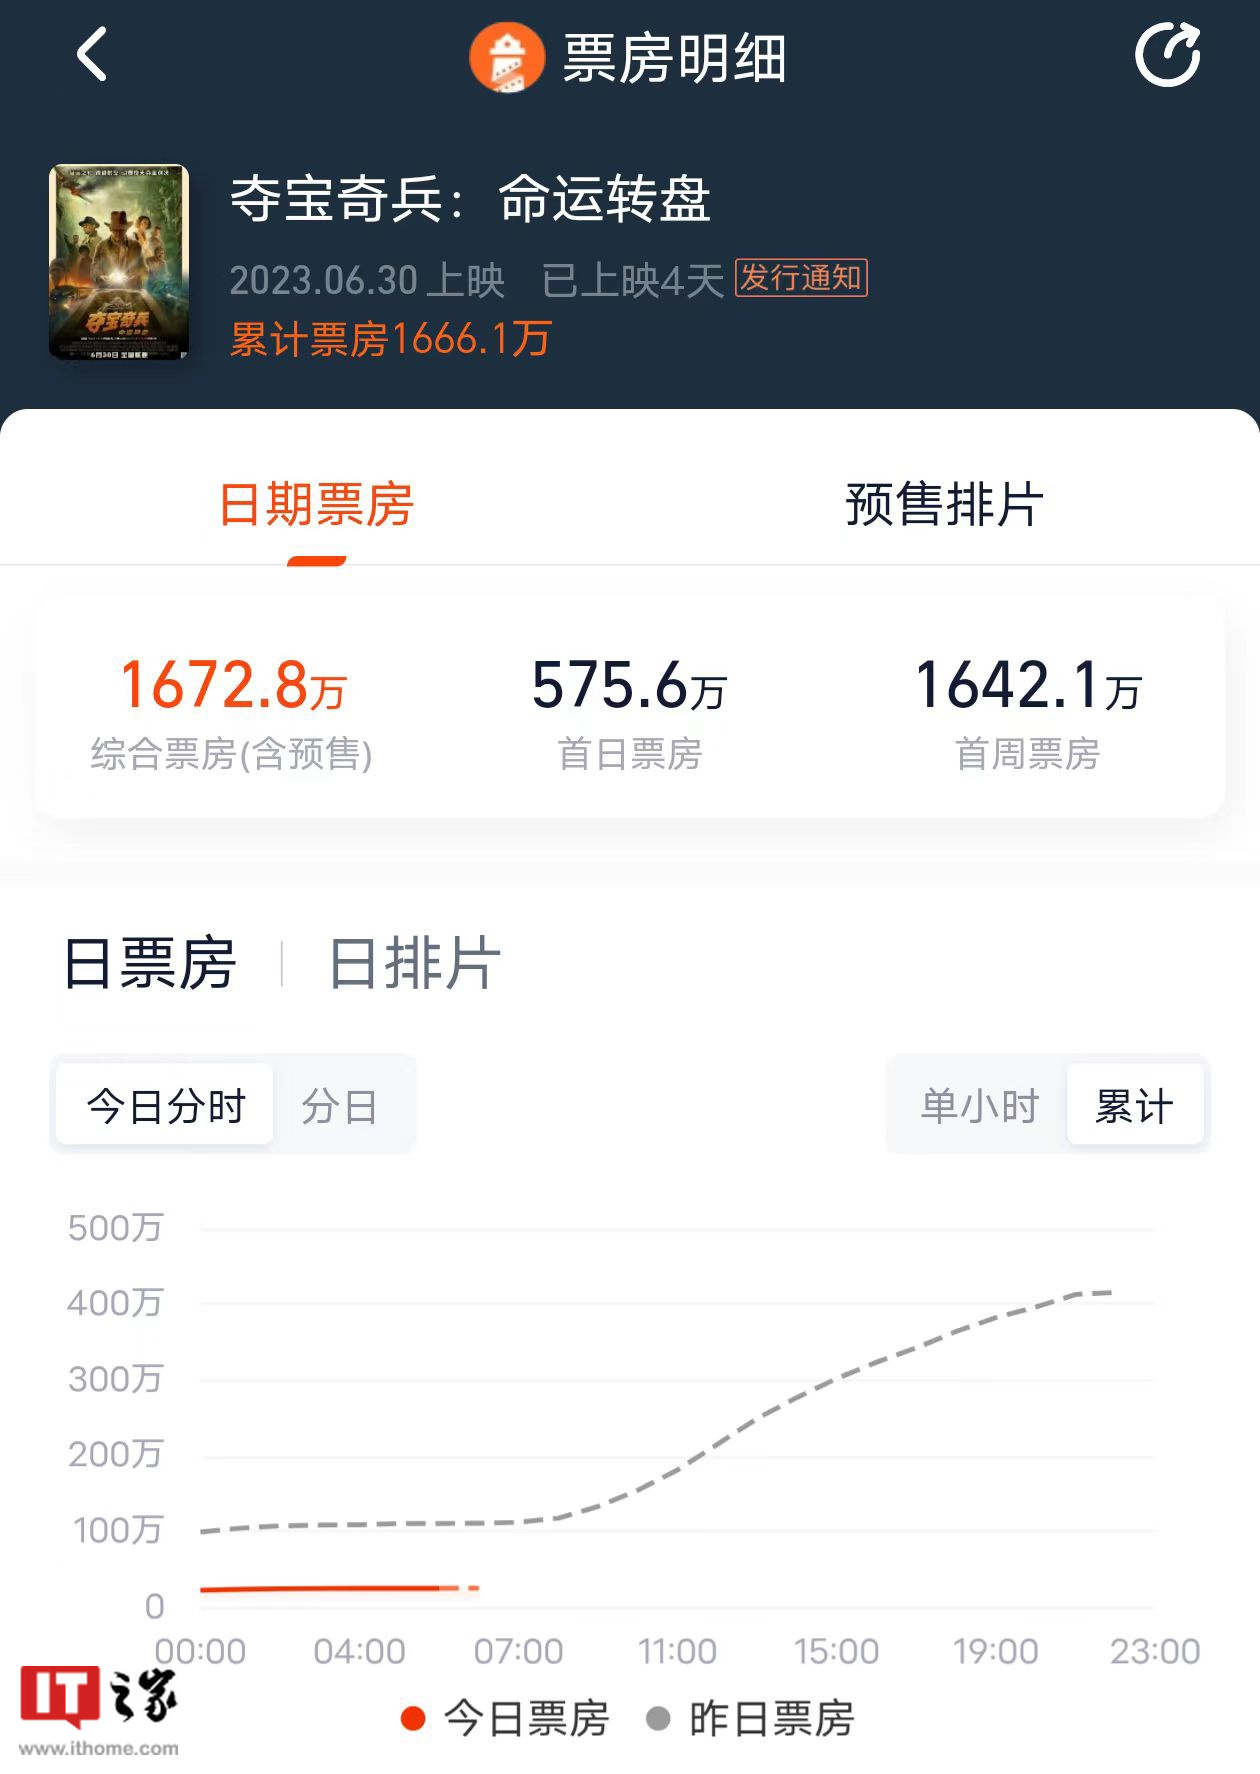 《夺宝奇兵 5: 命运转盘》中国内地首周票房 1642 万元，全球票房约 1